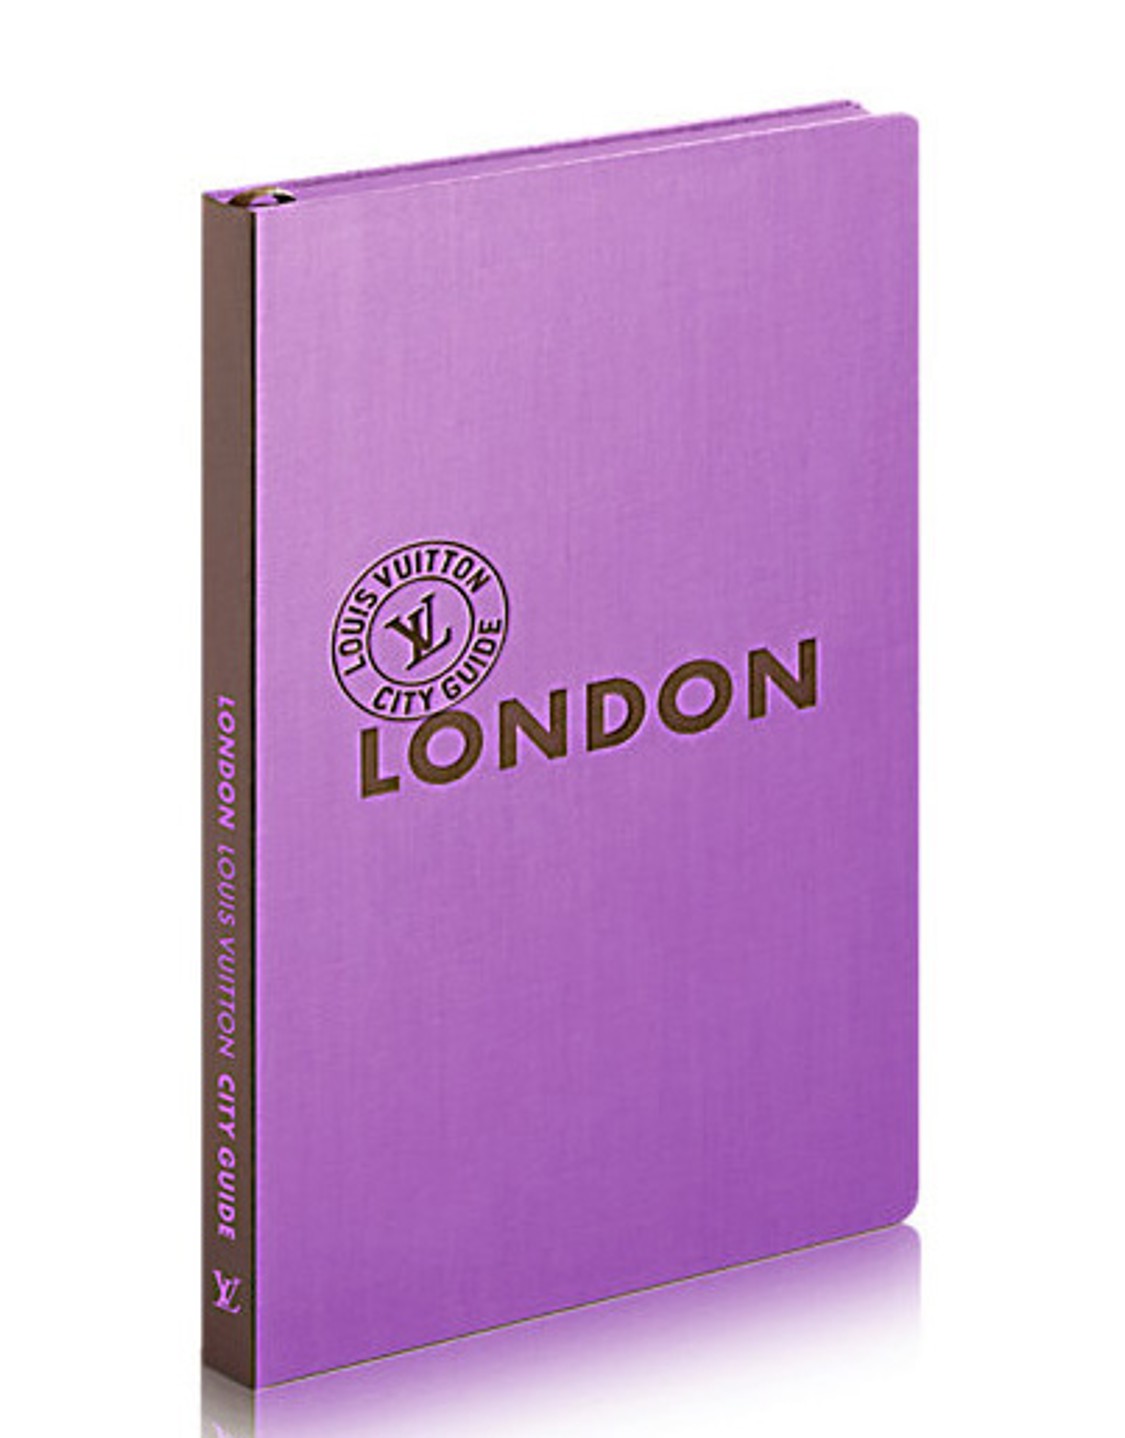 shop Louis Vuitton  Libri: Guida Louis Vuitton di Londra in versione inglese. number 1102